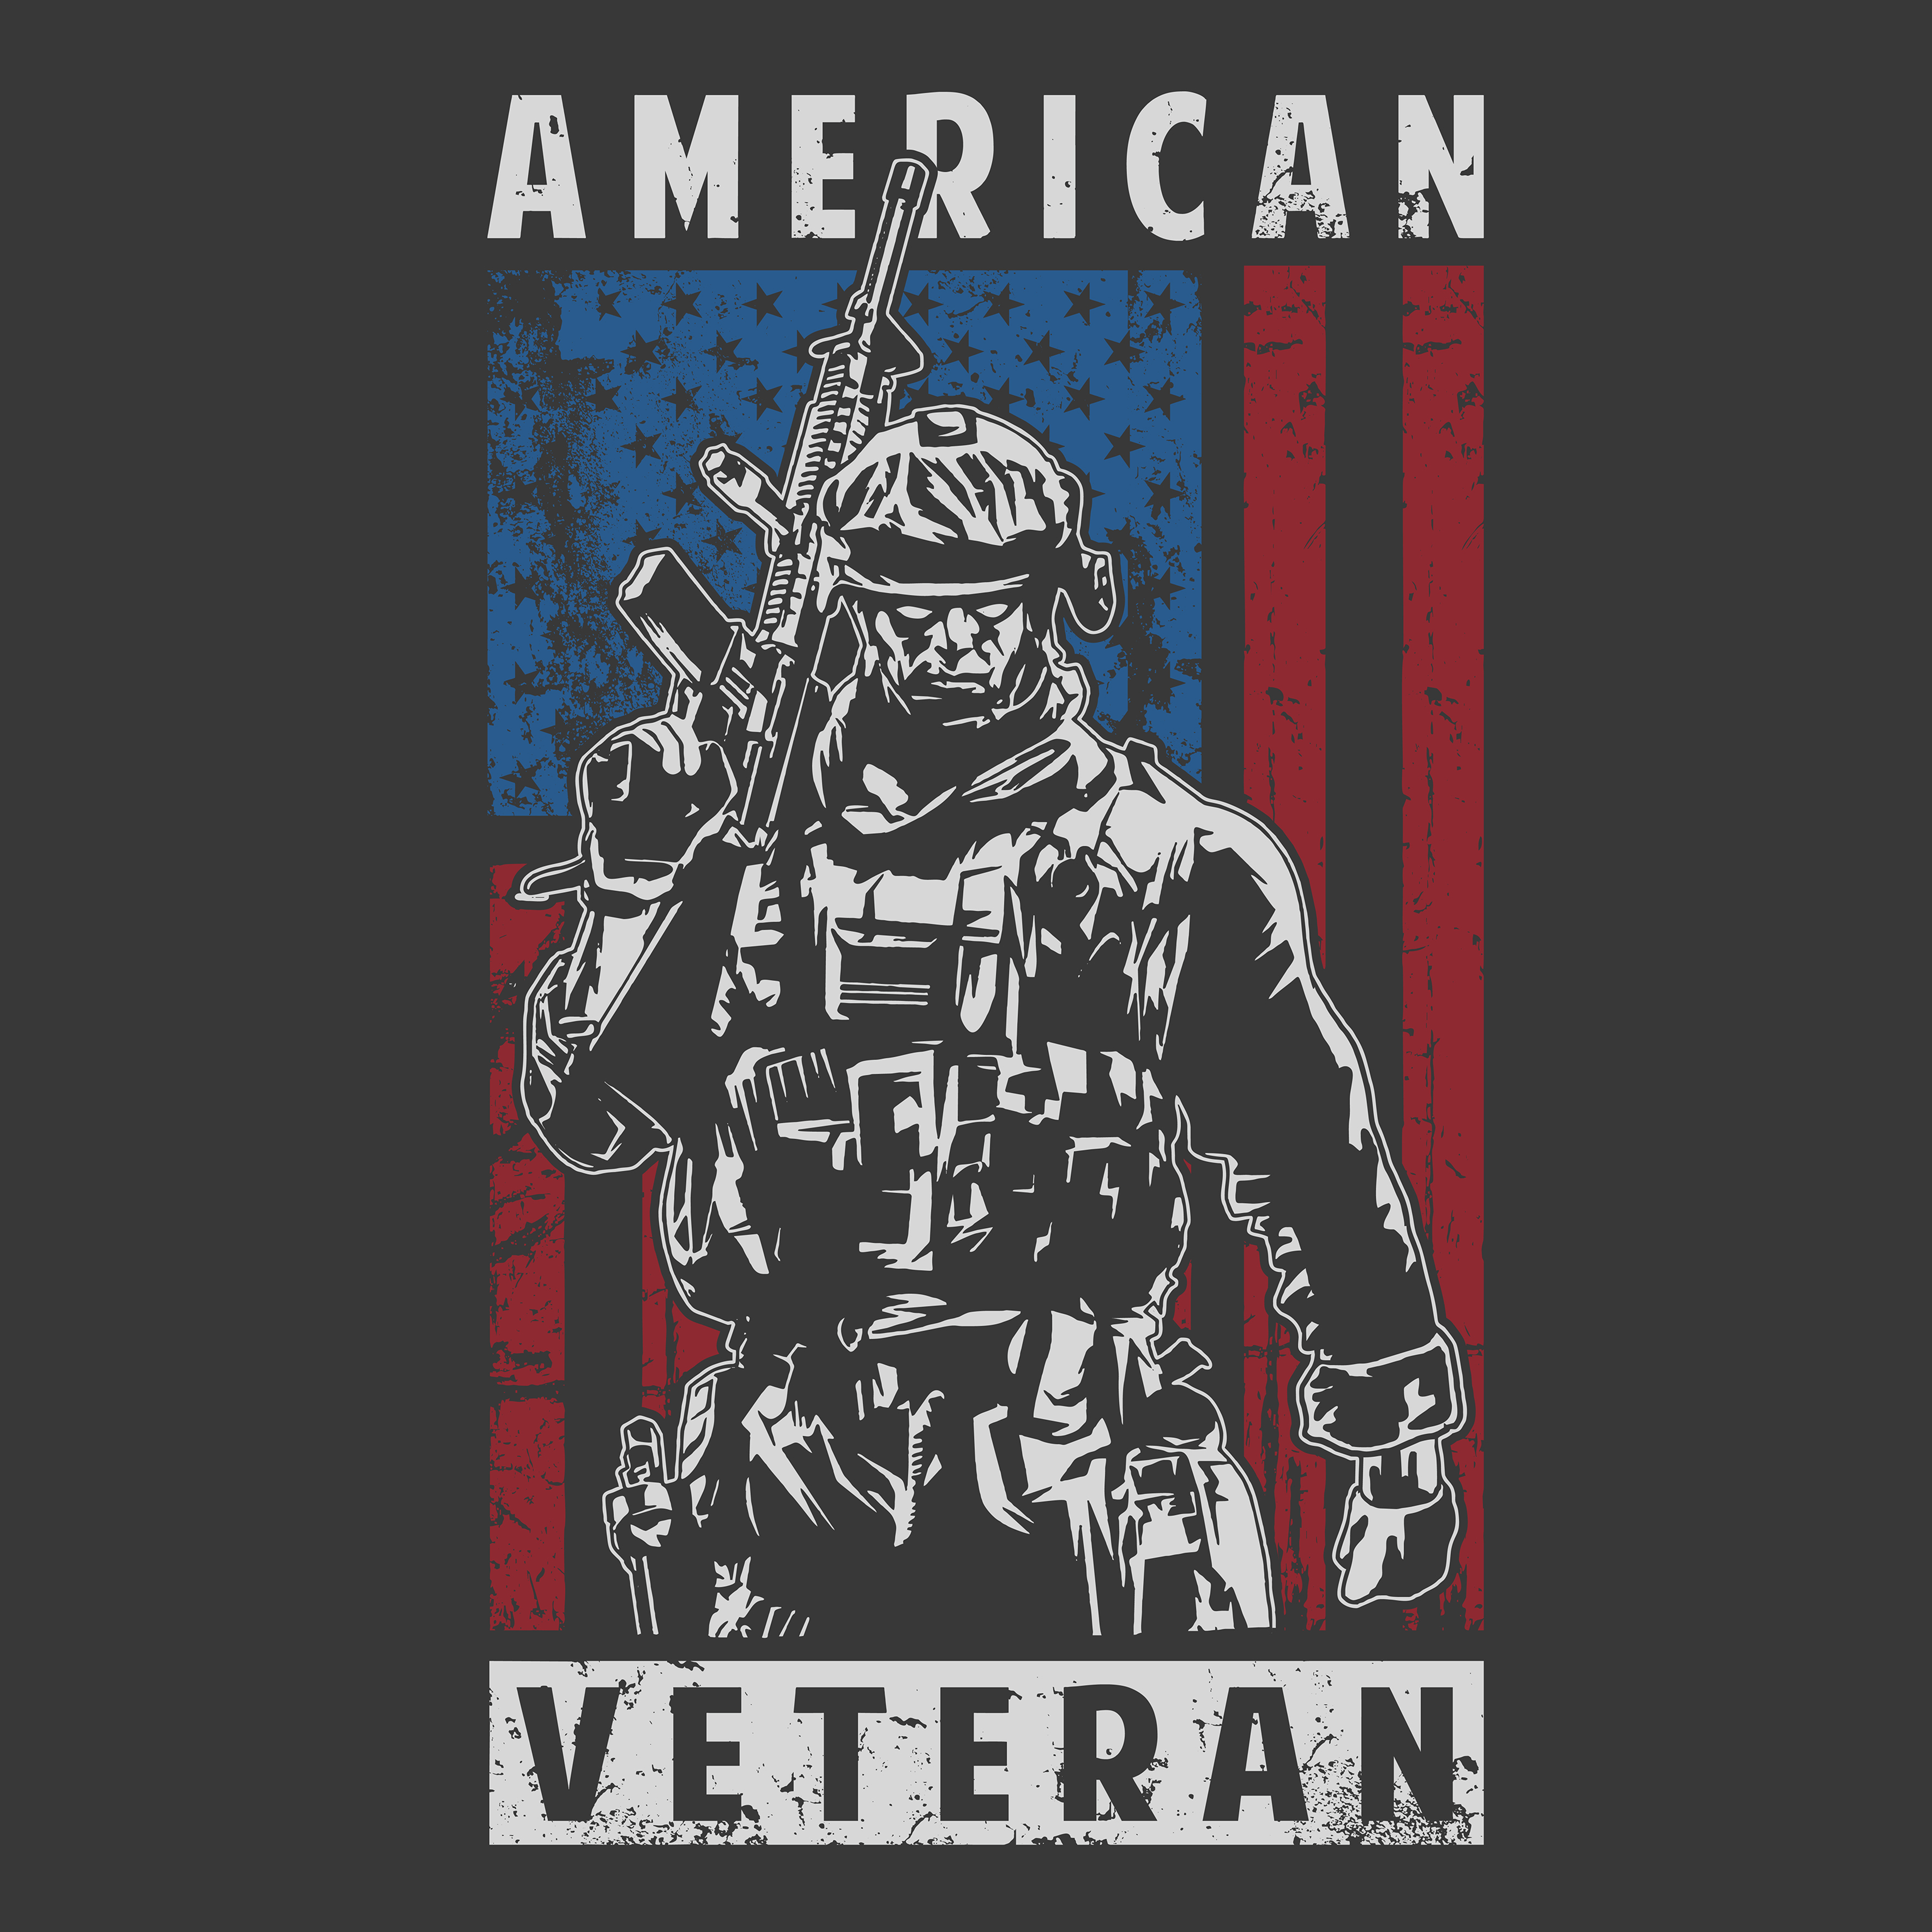 Download American Veteran Military Patriotic Poster - Download Free ...